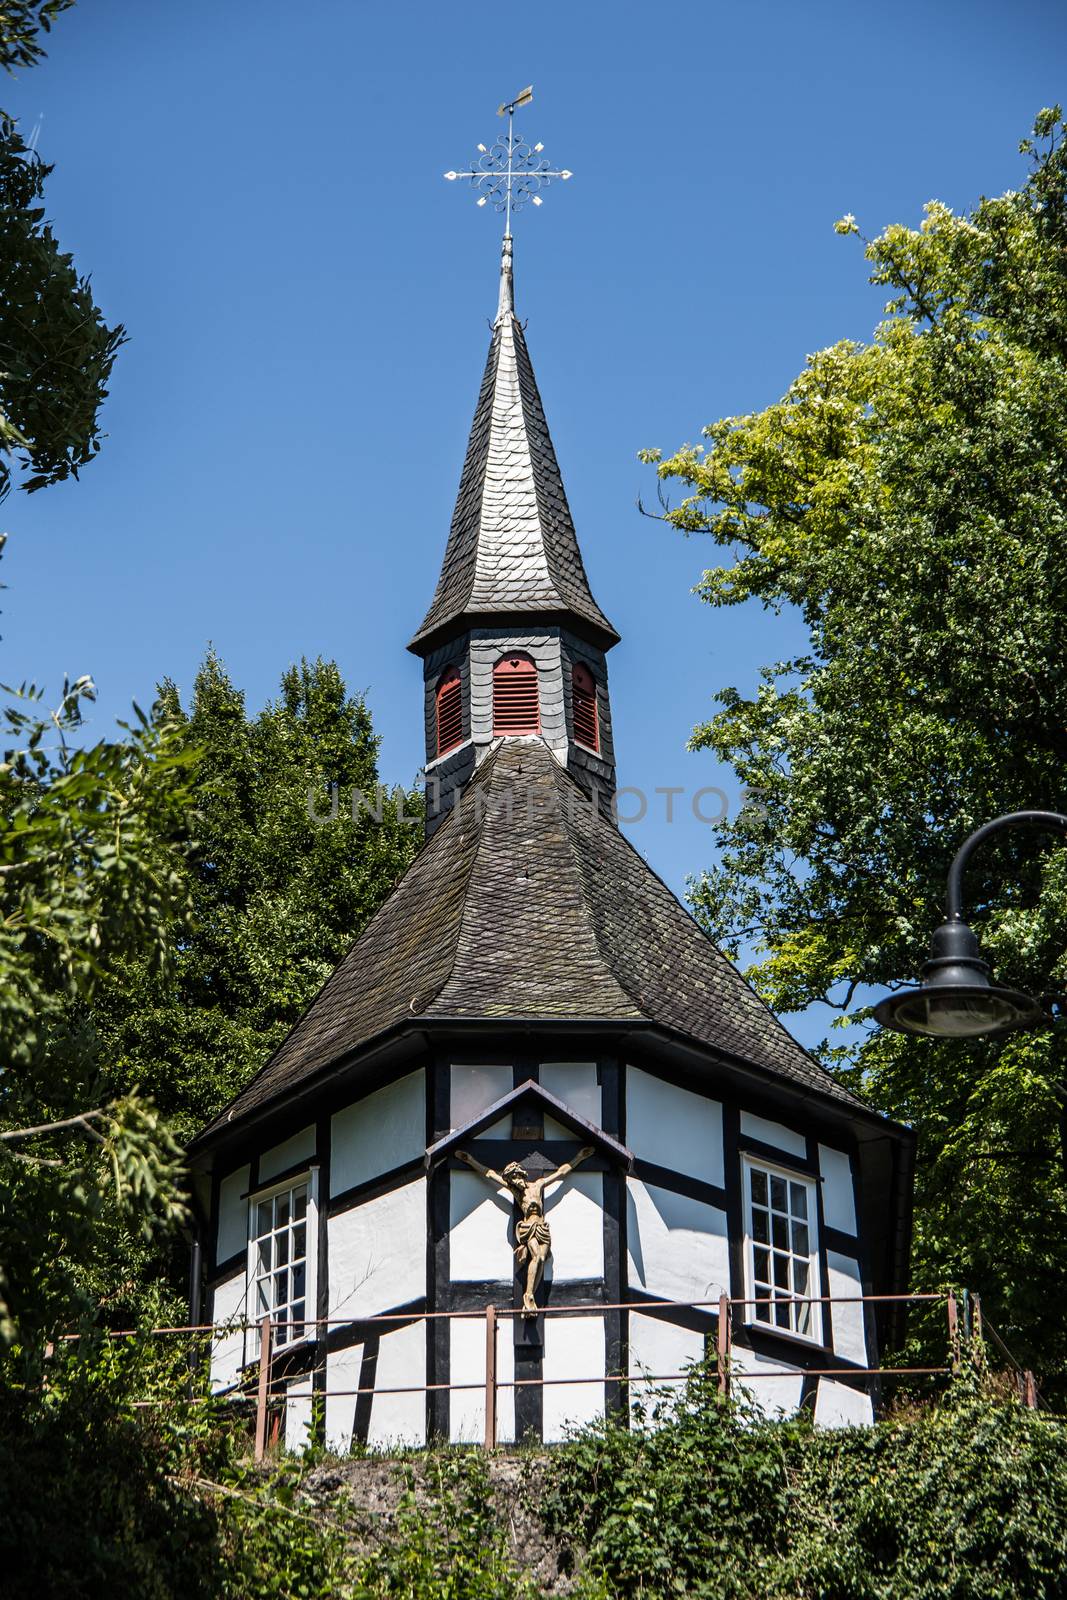 Half-timbered Heisterkapelle in Wissen